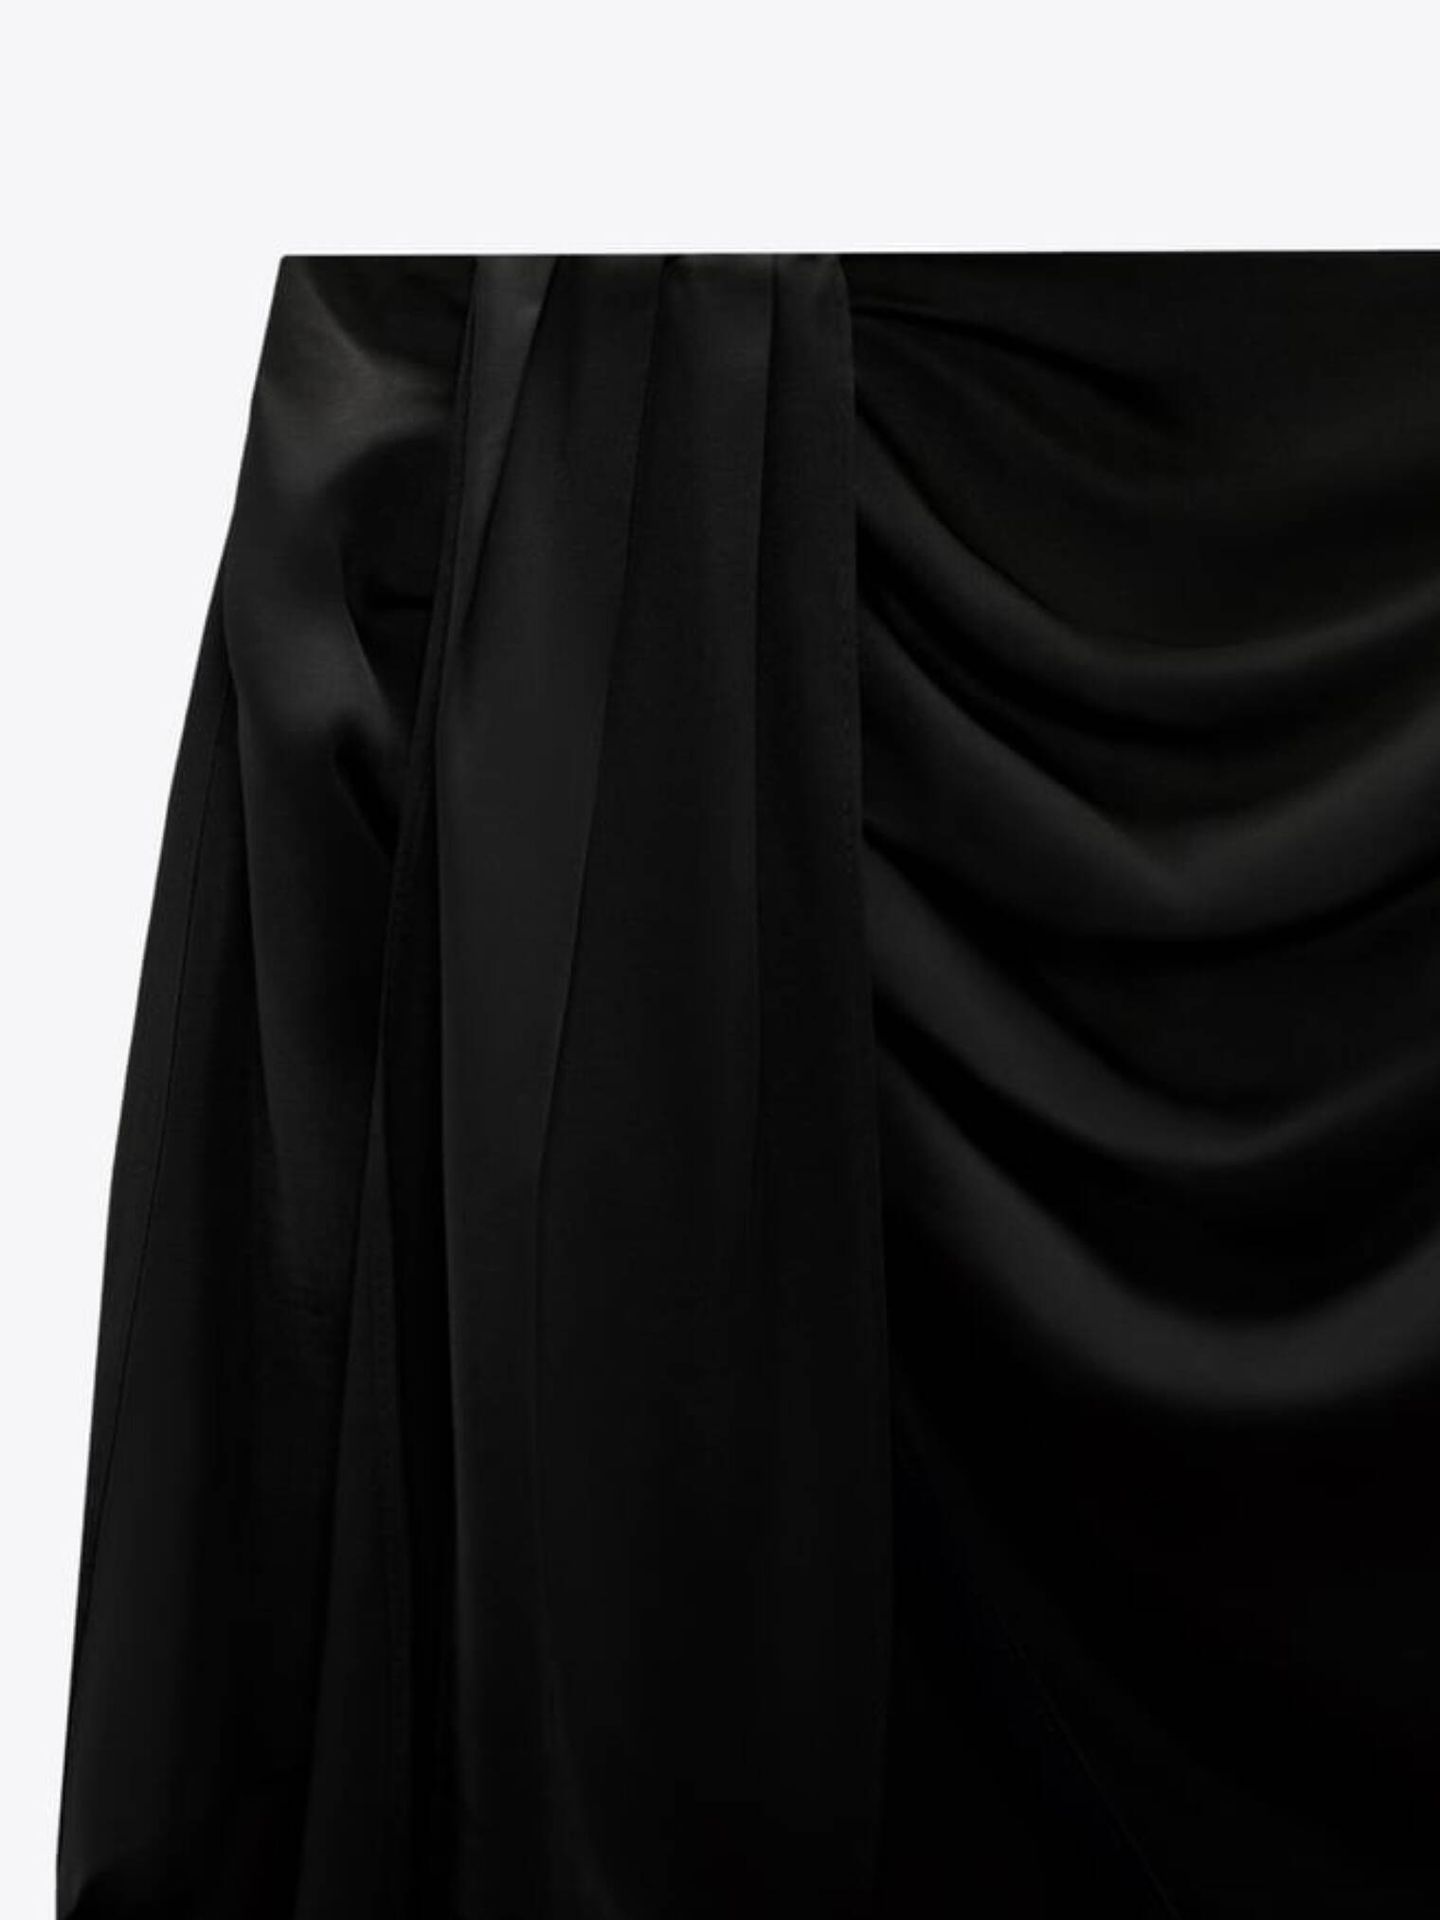 Detalle de la falda efecto vientre plano de Zara. (Cortesía)